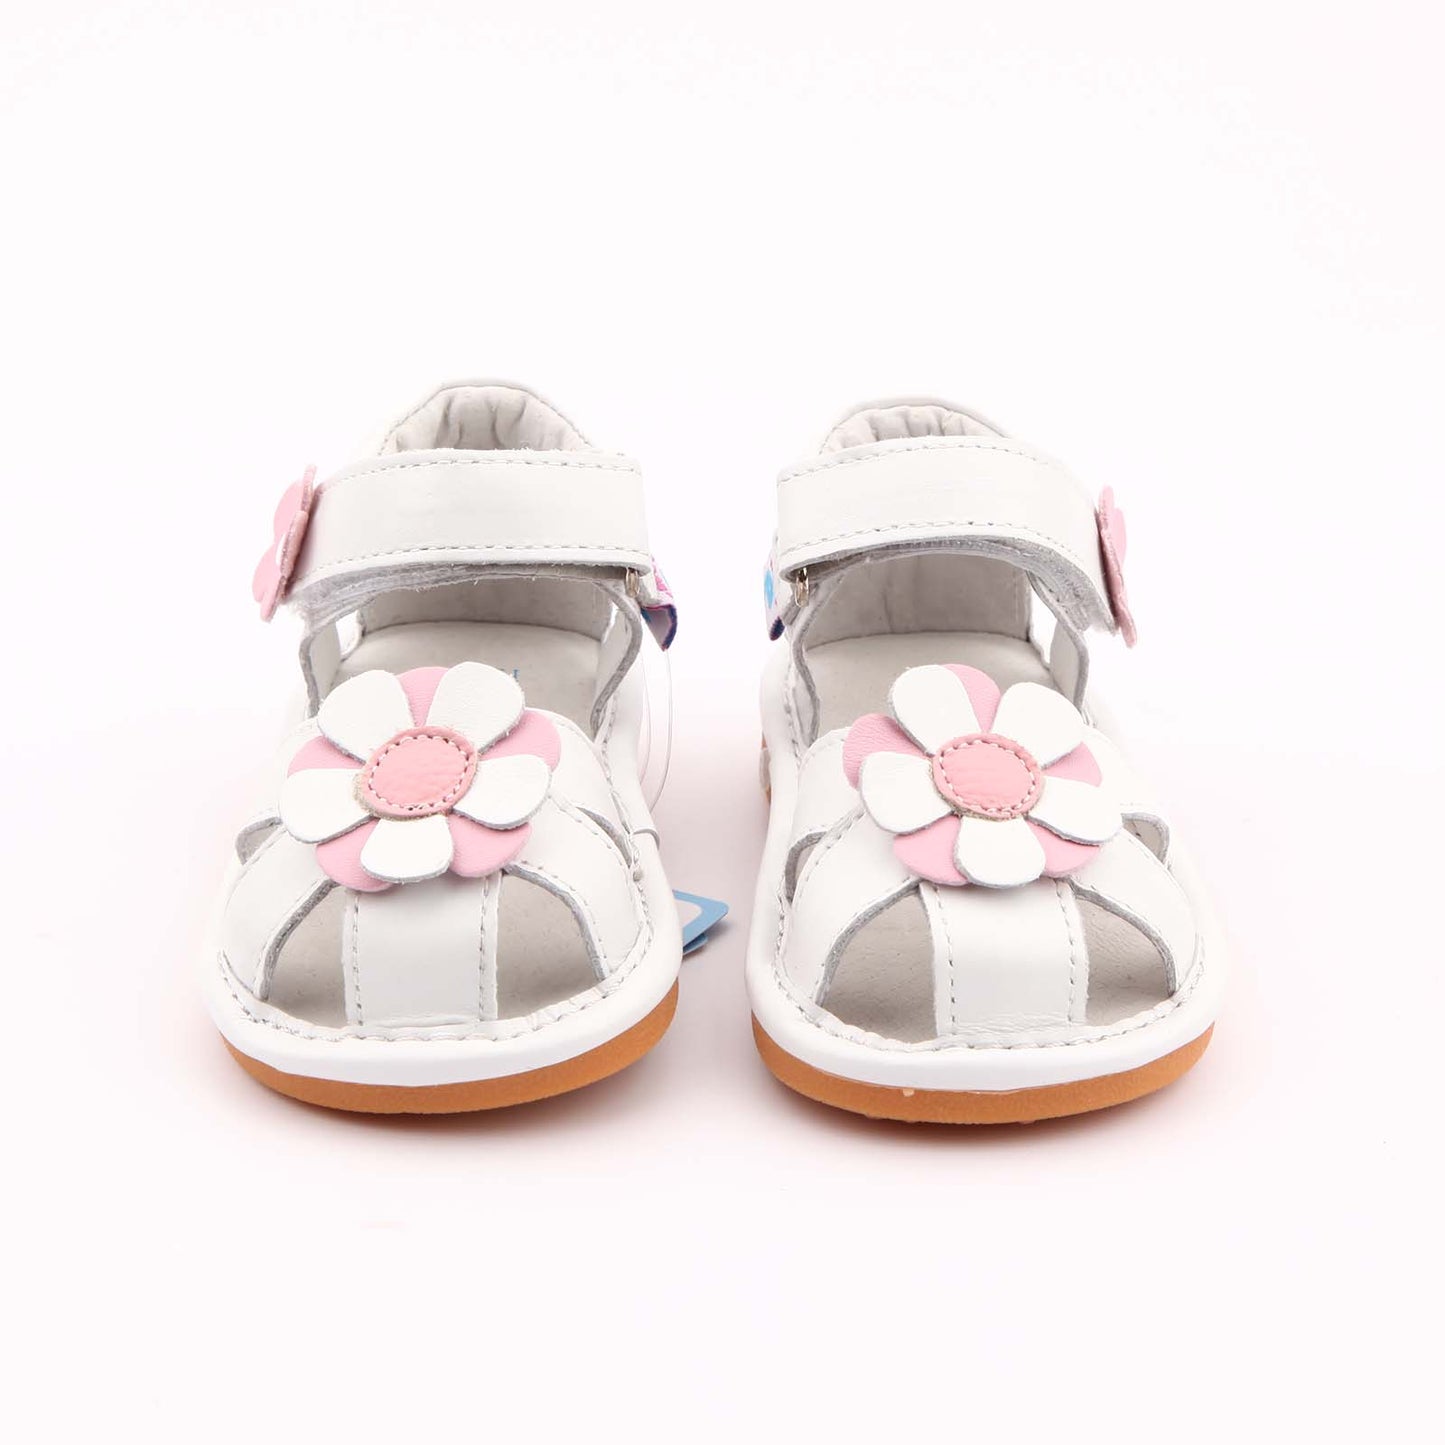 Freycoo - White Kayla Squeaky Shoes